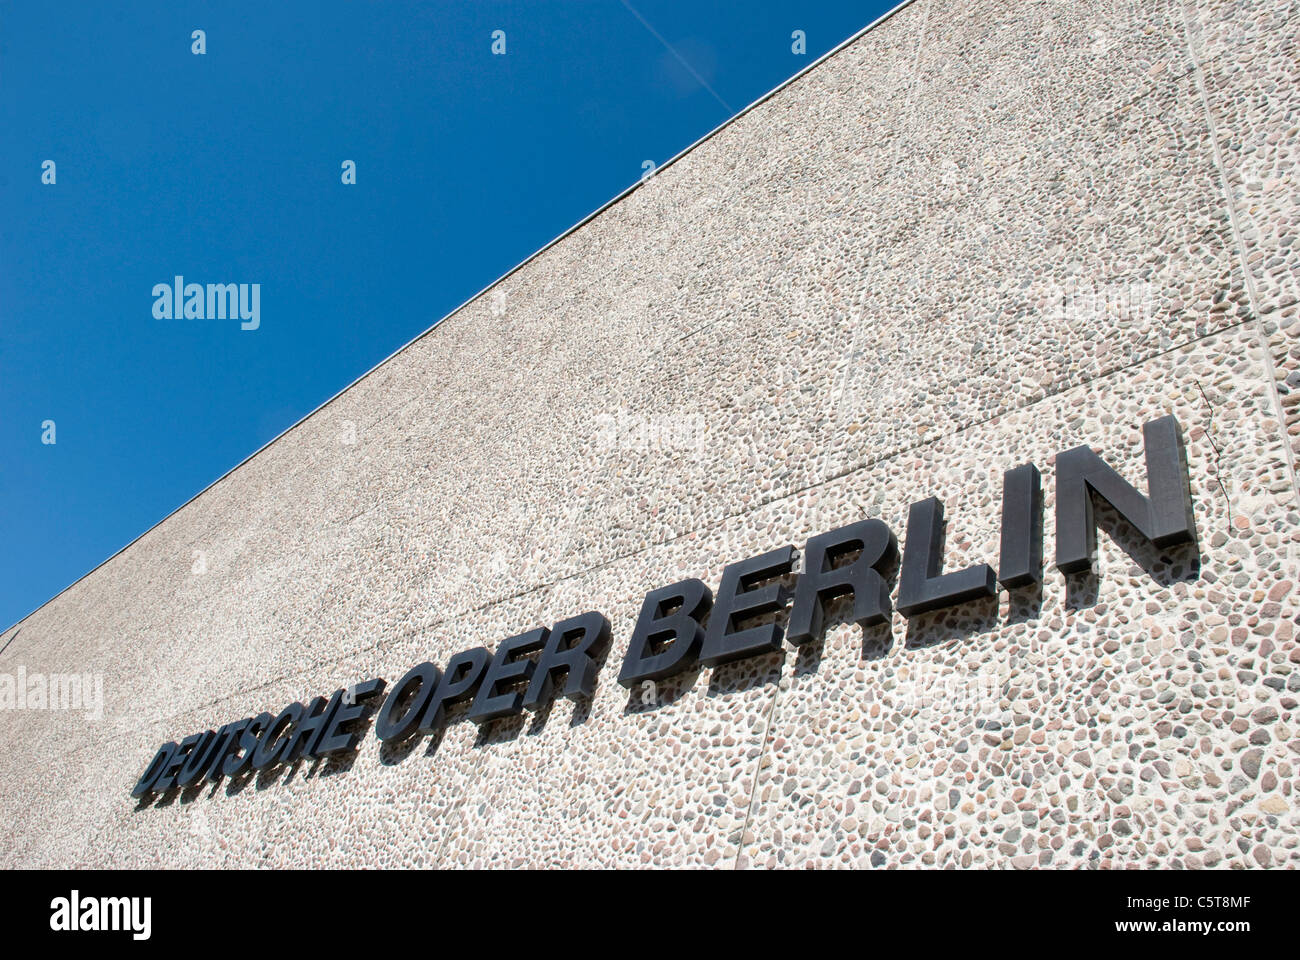 Germania, Berlino, Opera House, a basso angolo di visione Foto Stock